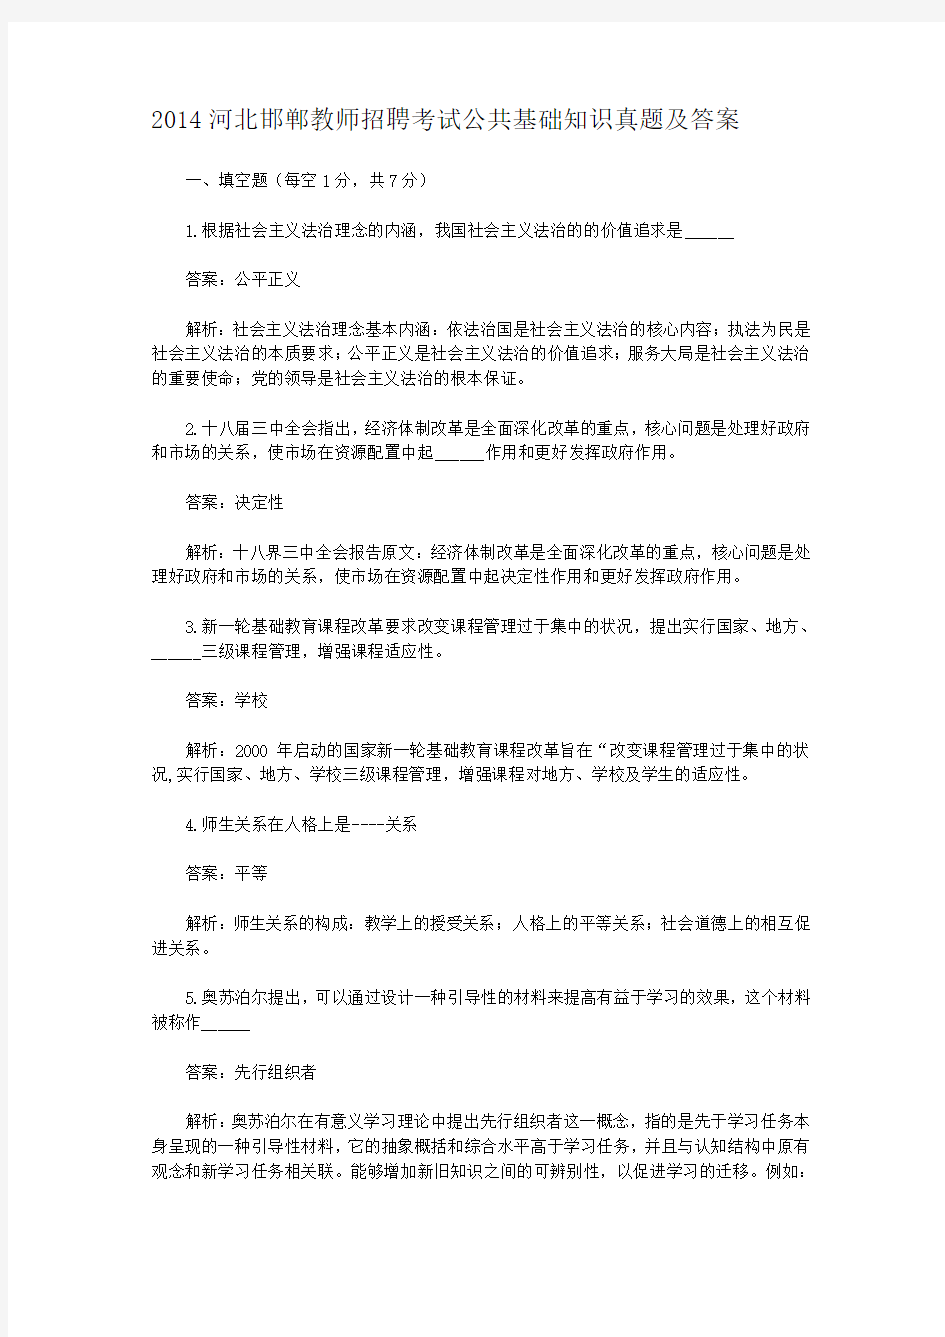 2014河北邯郸教师招聘考试公共基础知识真题及答案